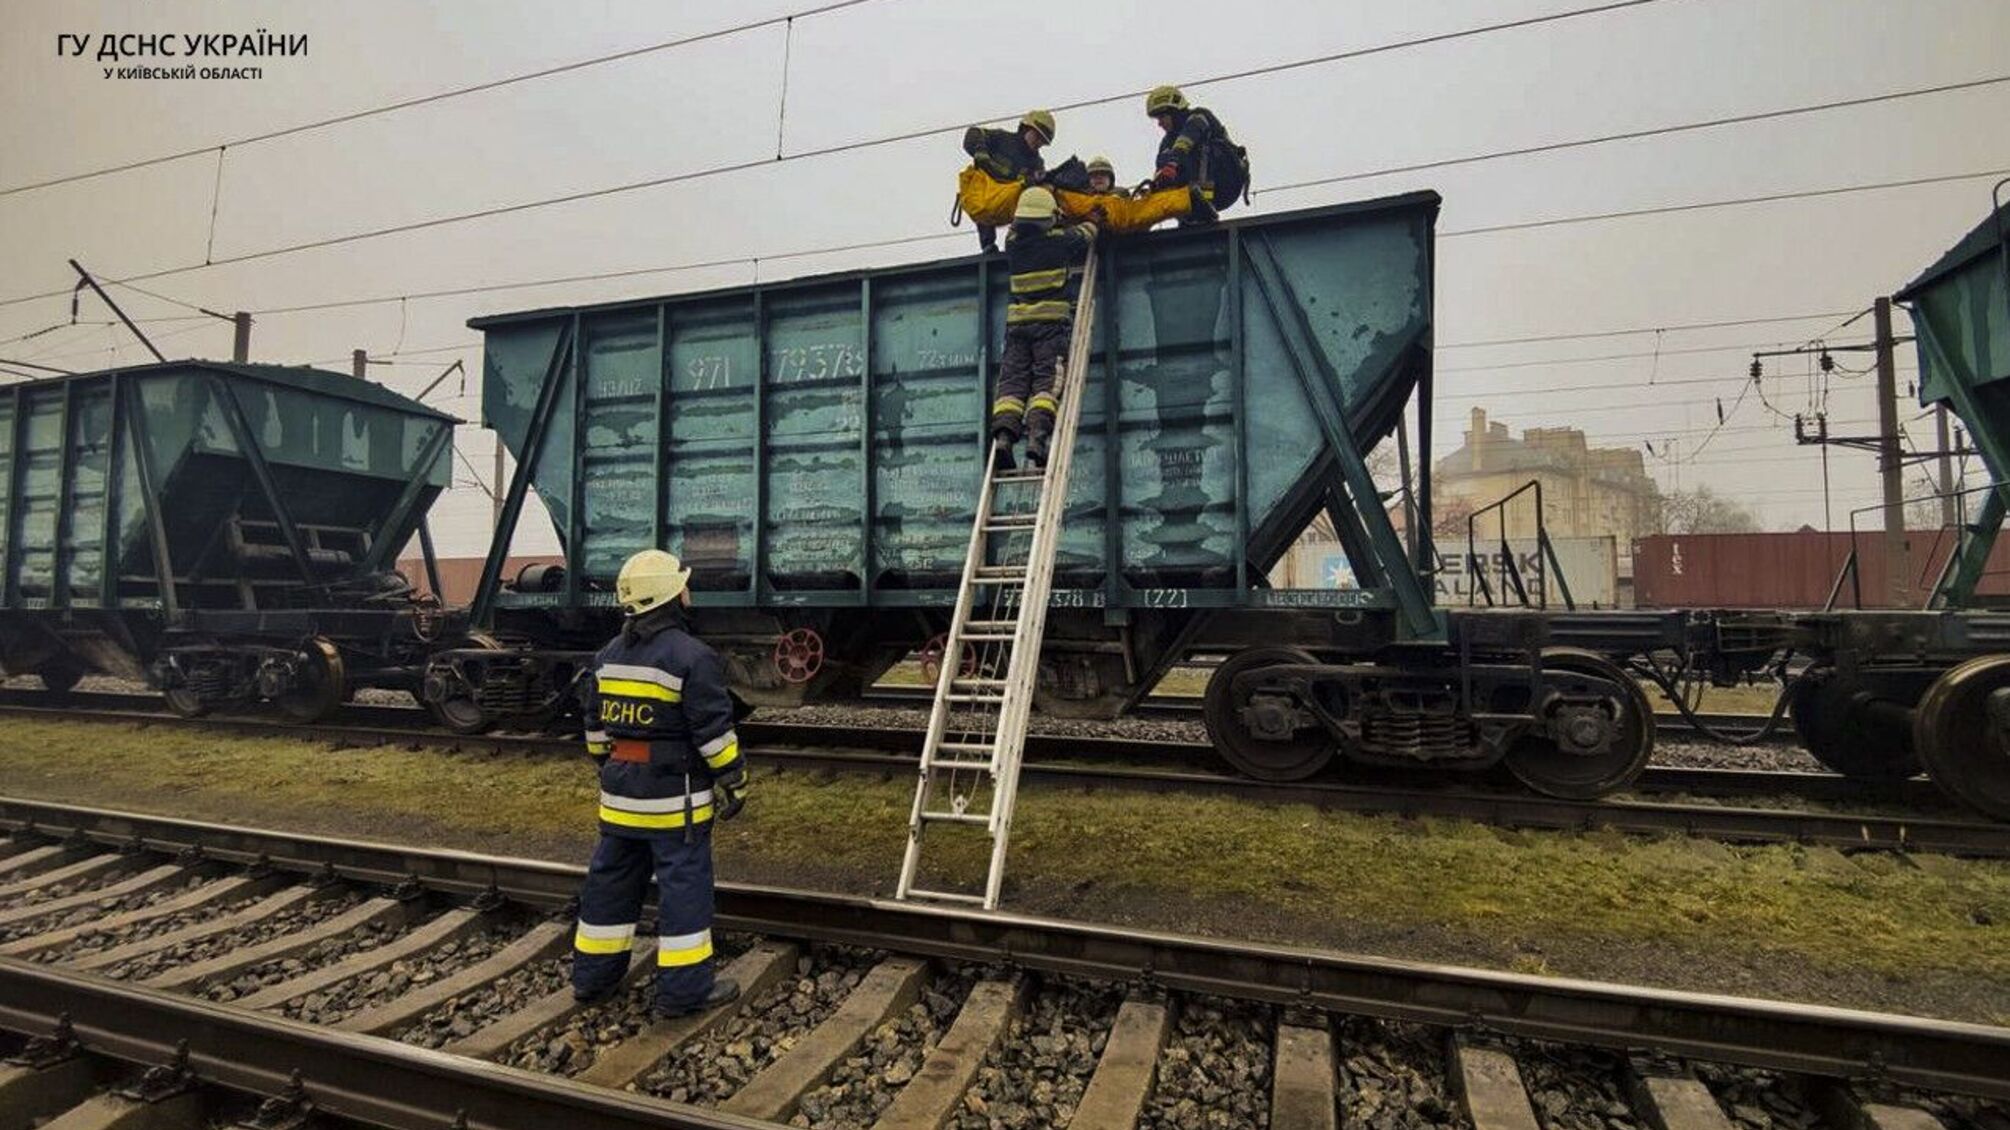 в Киевской области подростки хотели сделать фото на поезде, в результате чего один мальчик погиб